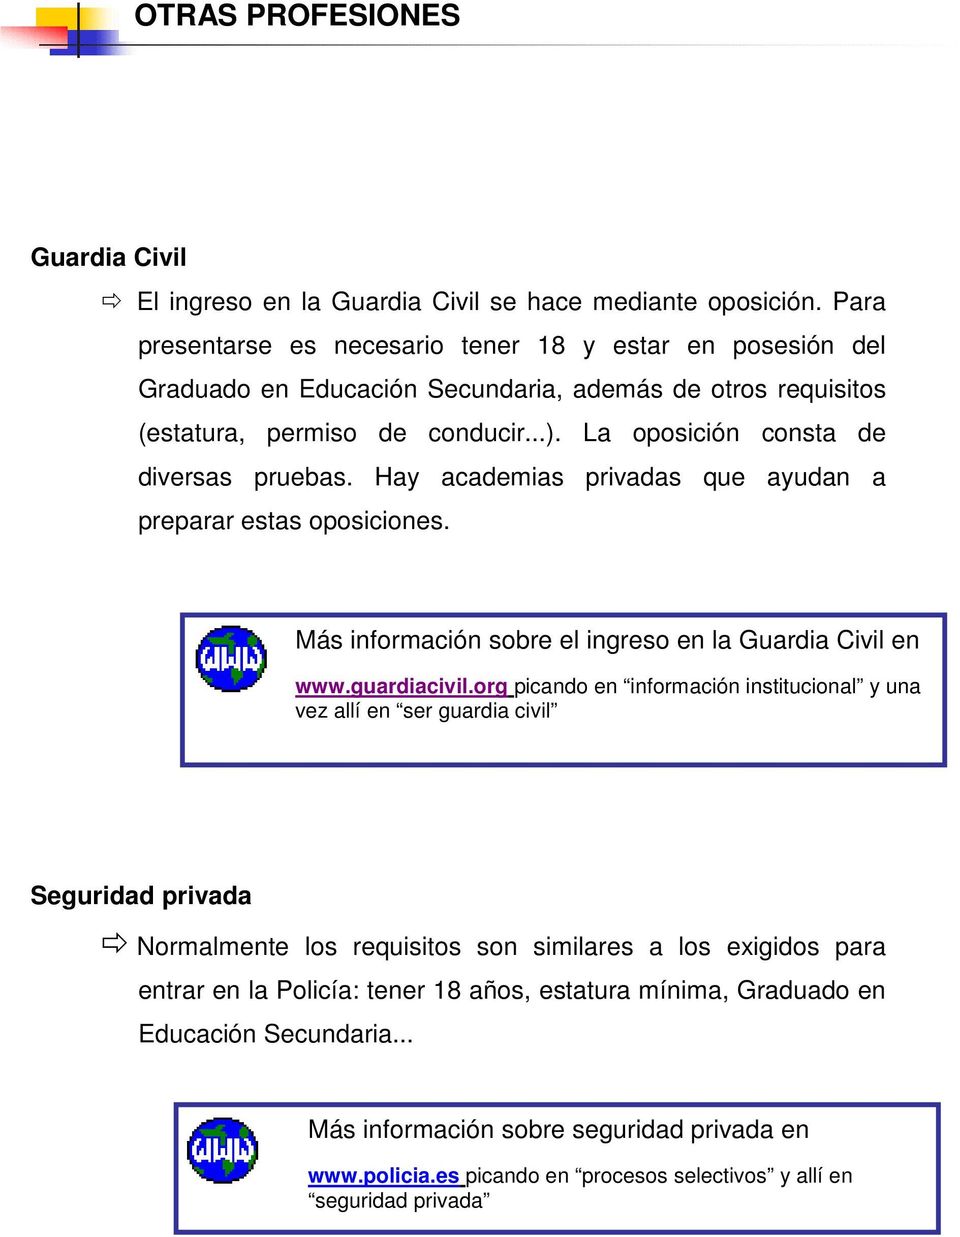 La oposición consta de diversas pruebas. Hay academias privadas que ayudan a preparar estas oposiciones. Más información sobre el ingreso en la Guardia Civil en www.guardiacivil.